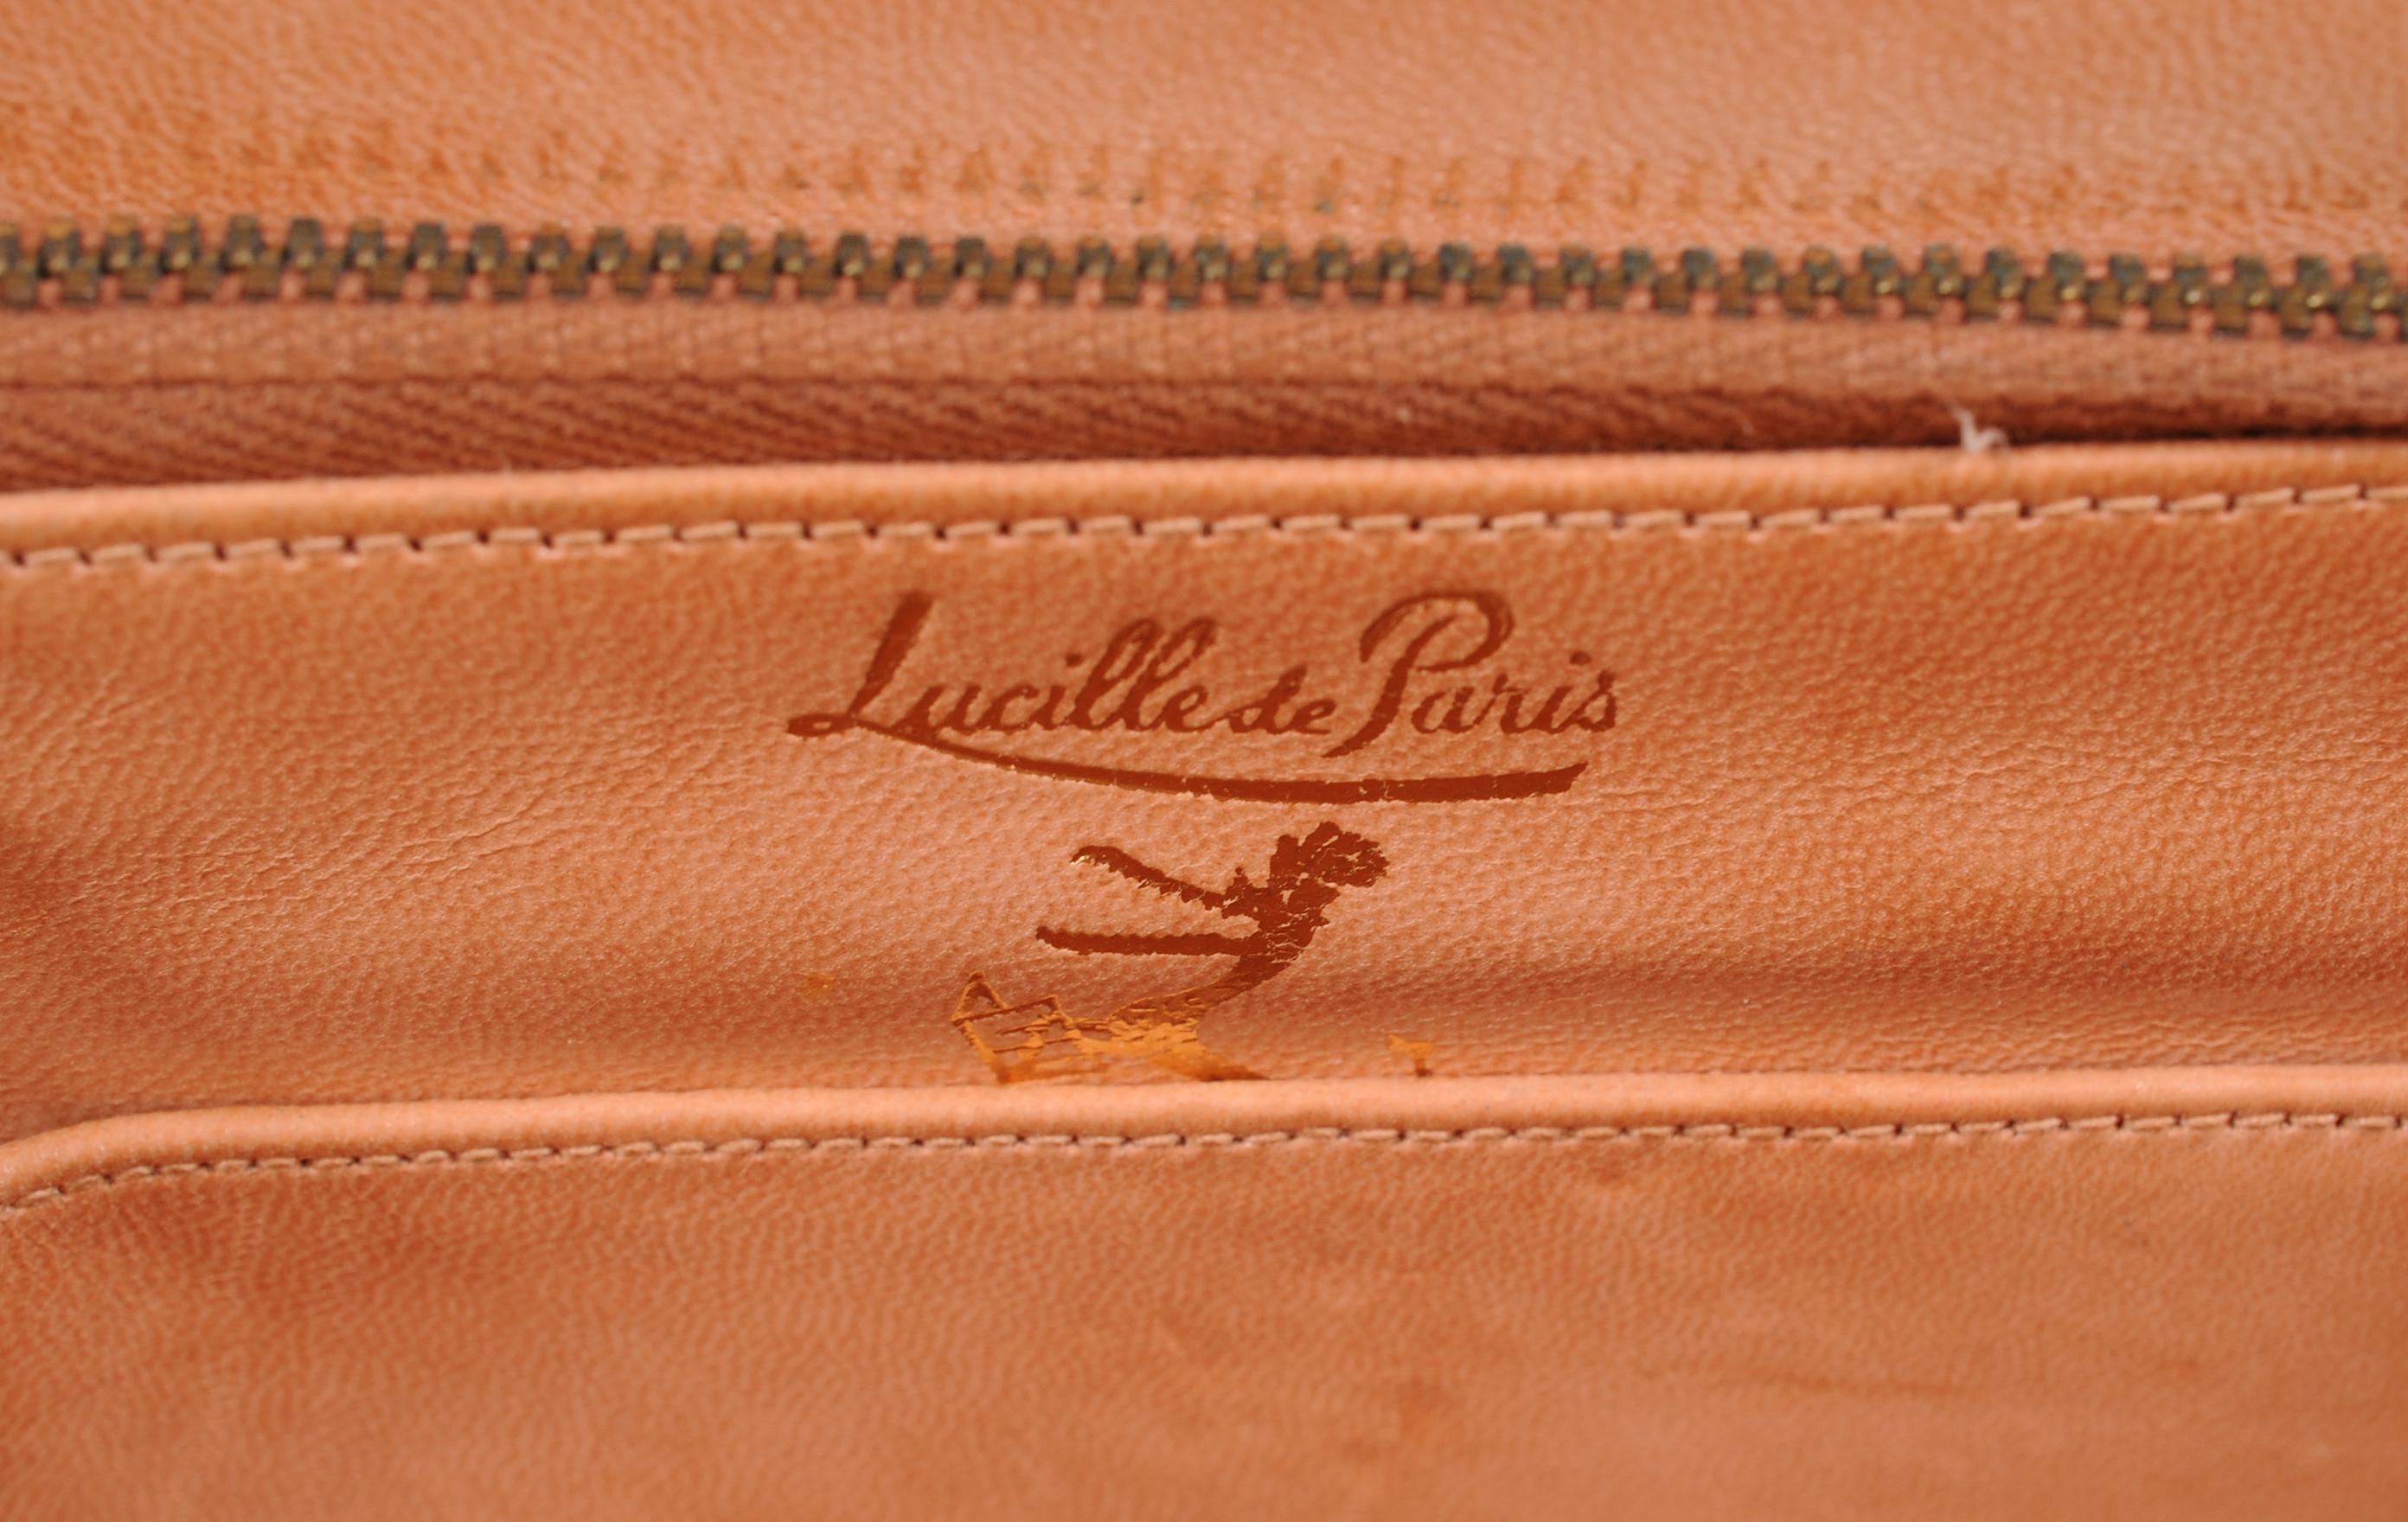 Lucille de Paris Pale Beige Crocodile Bag 1